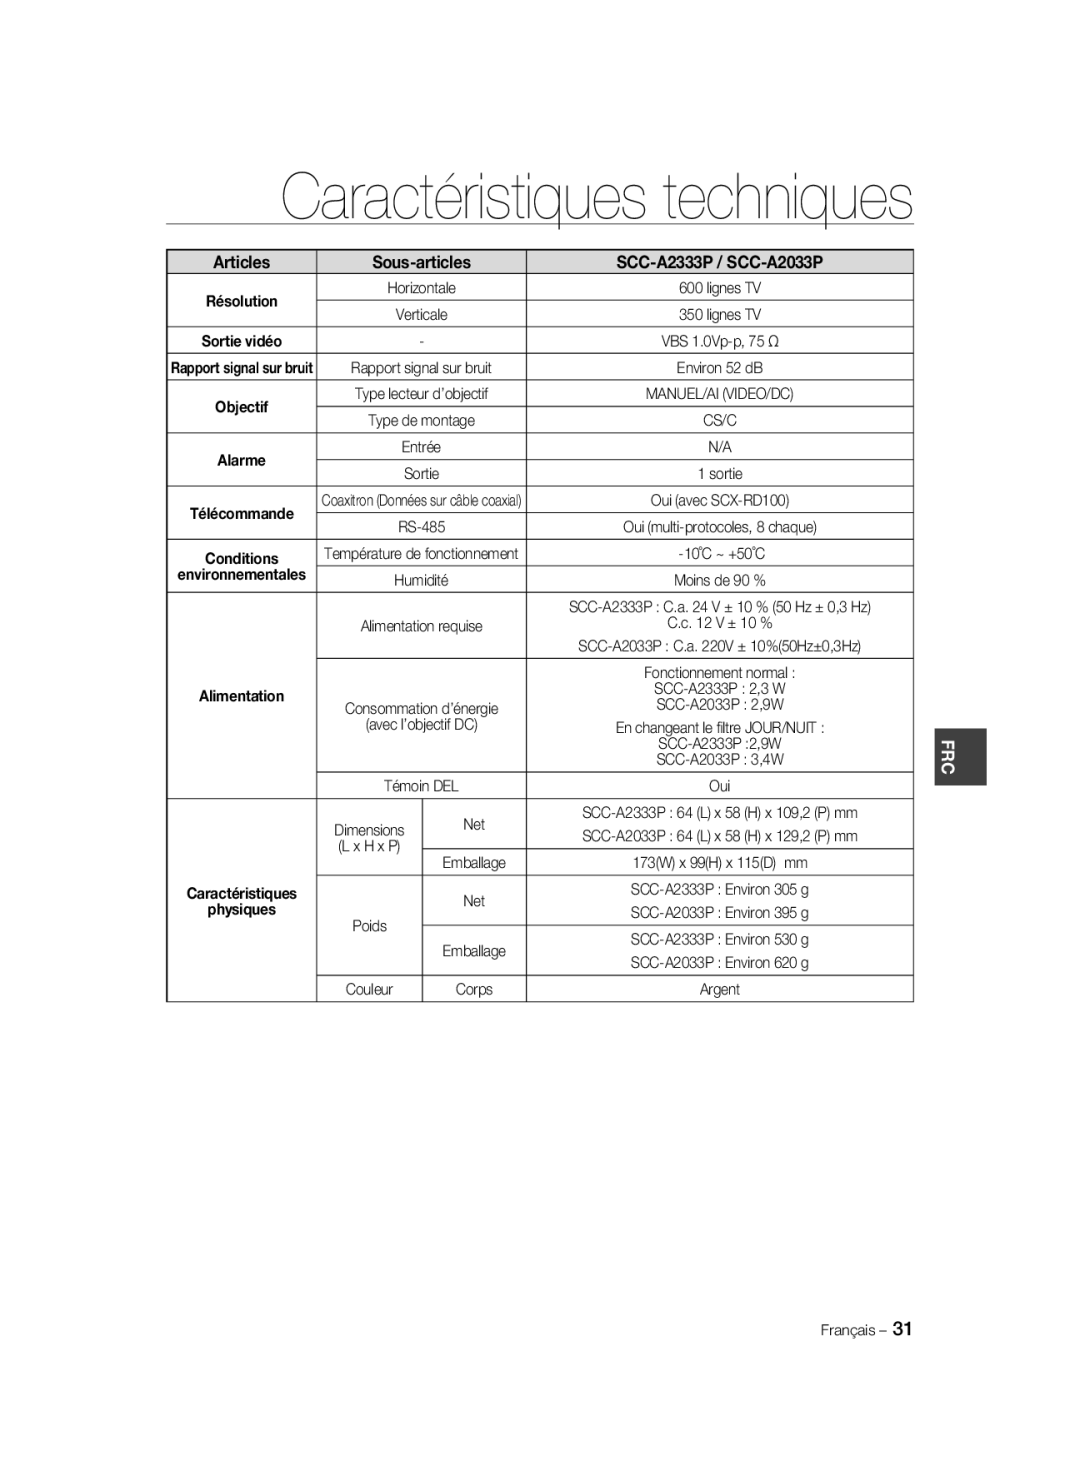 Samsung manual Caractéristiques techniques, Articles, Sous-articles, SCC-A2333P / SCC-A2033P 